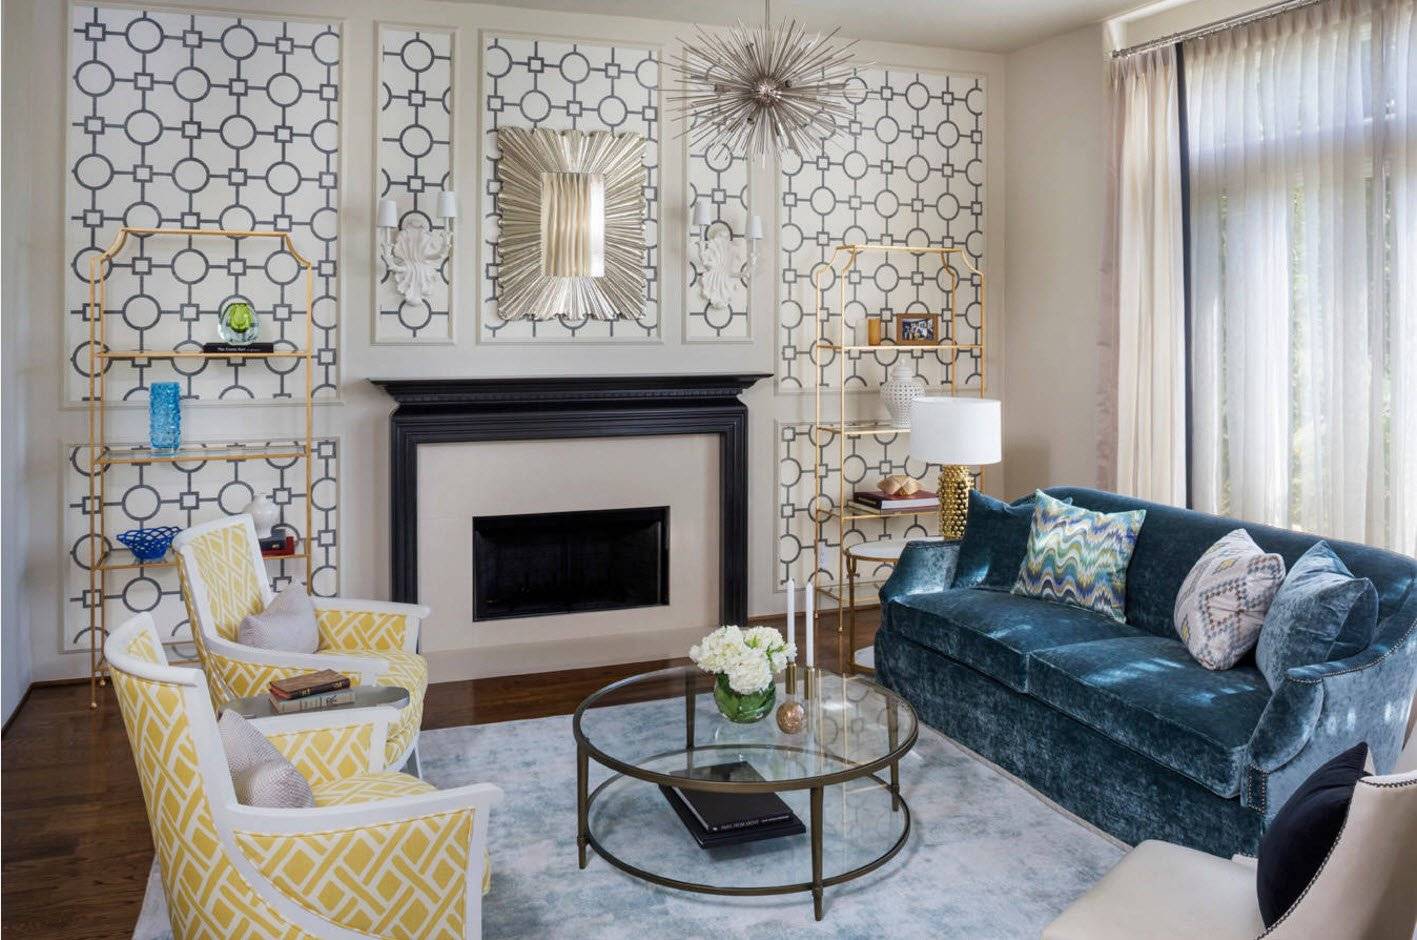 Дизайн зала в квартире — фото 2020: современные идеи, обои двух цветов